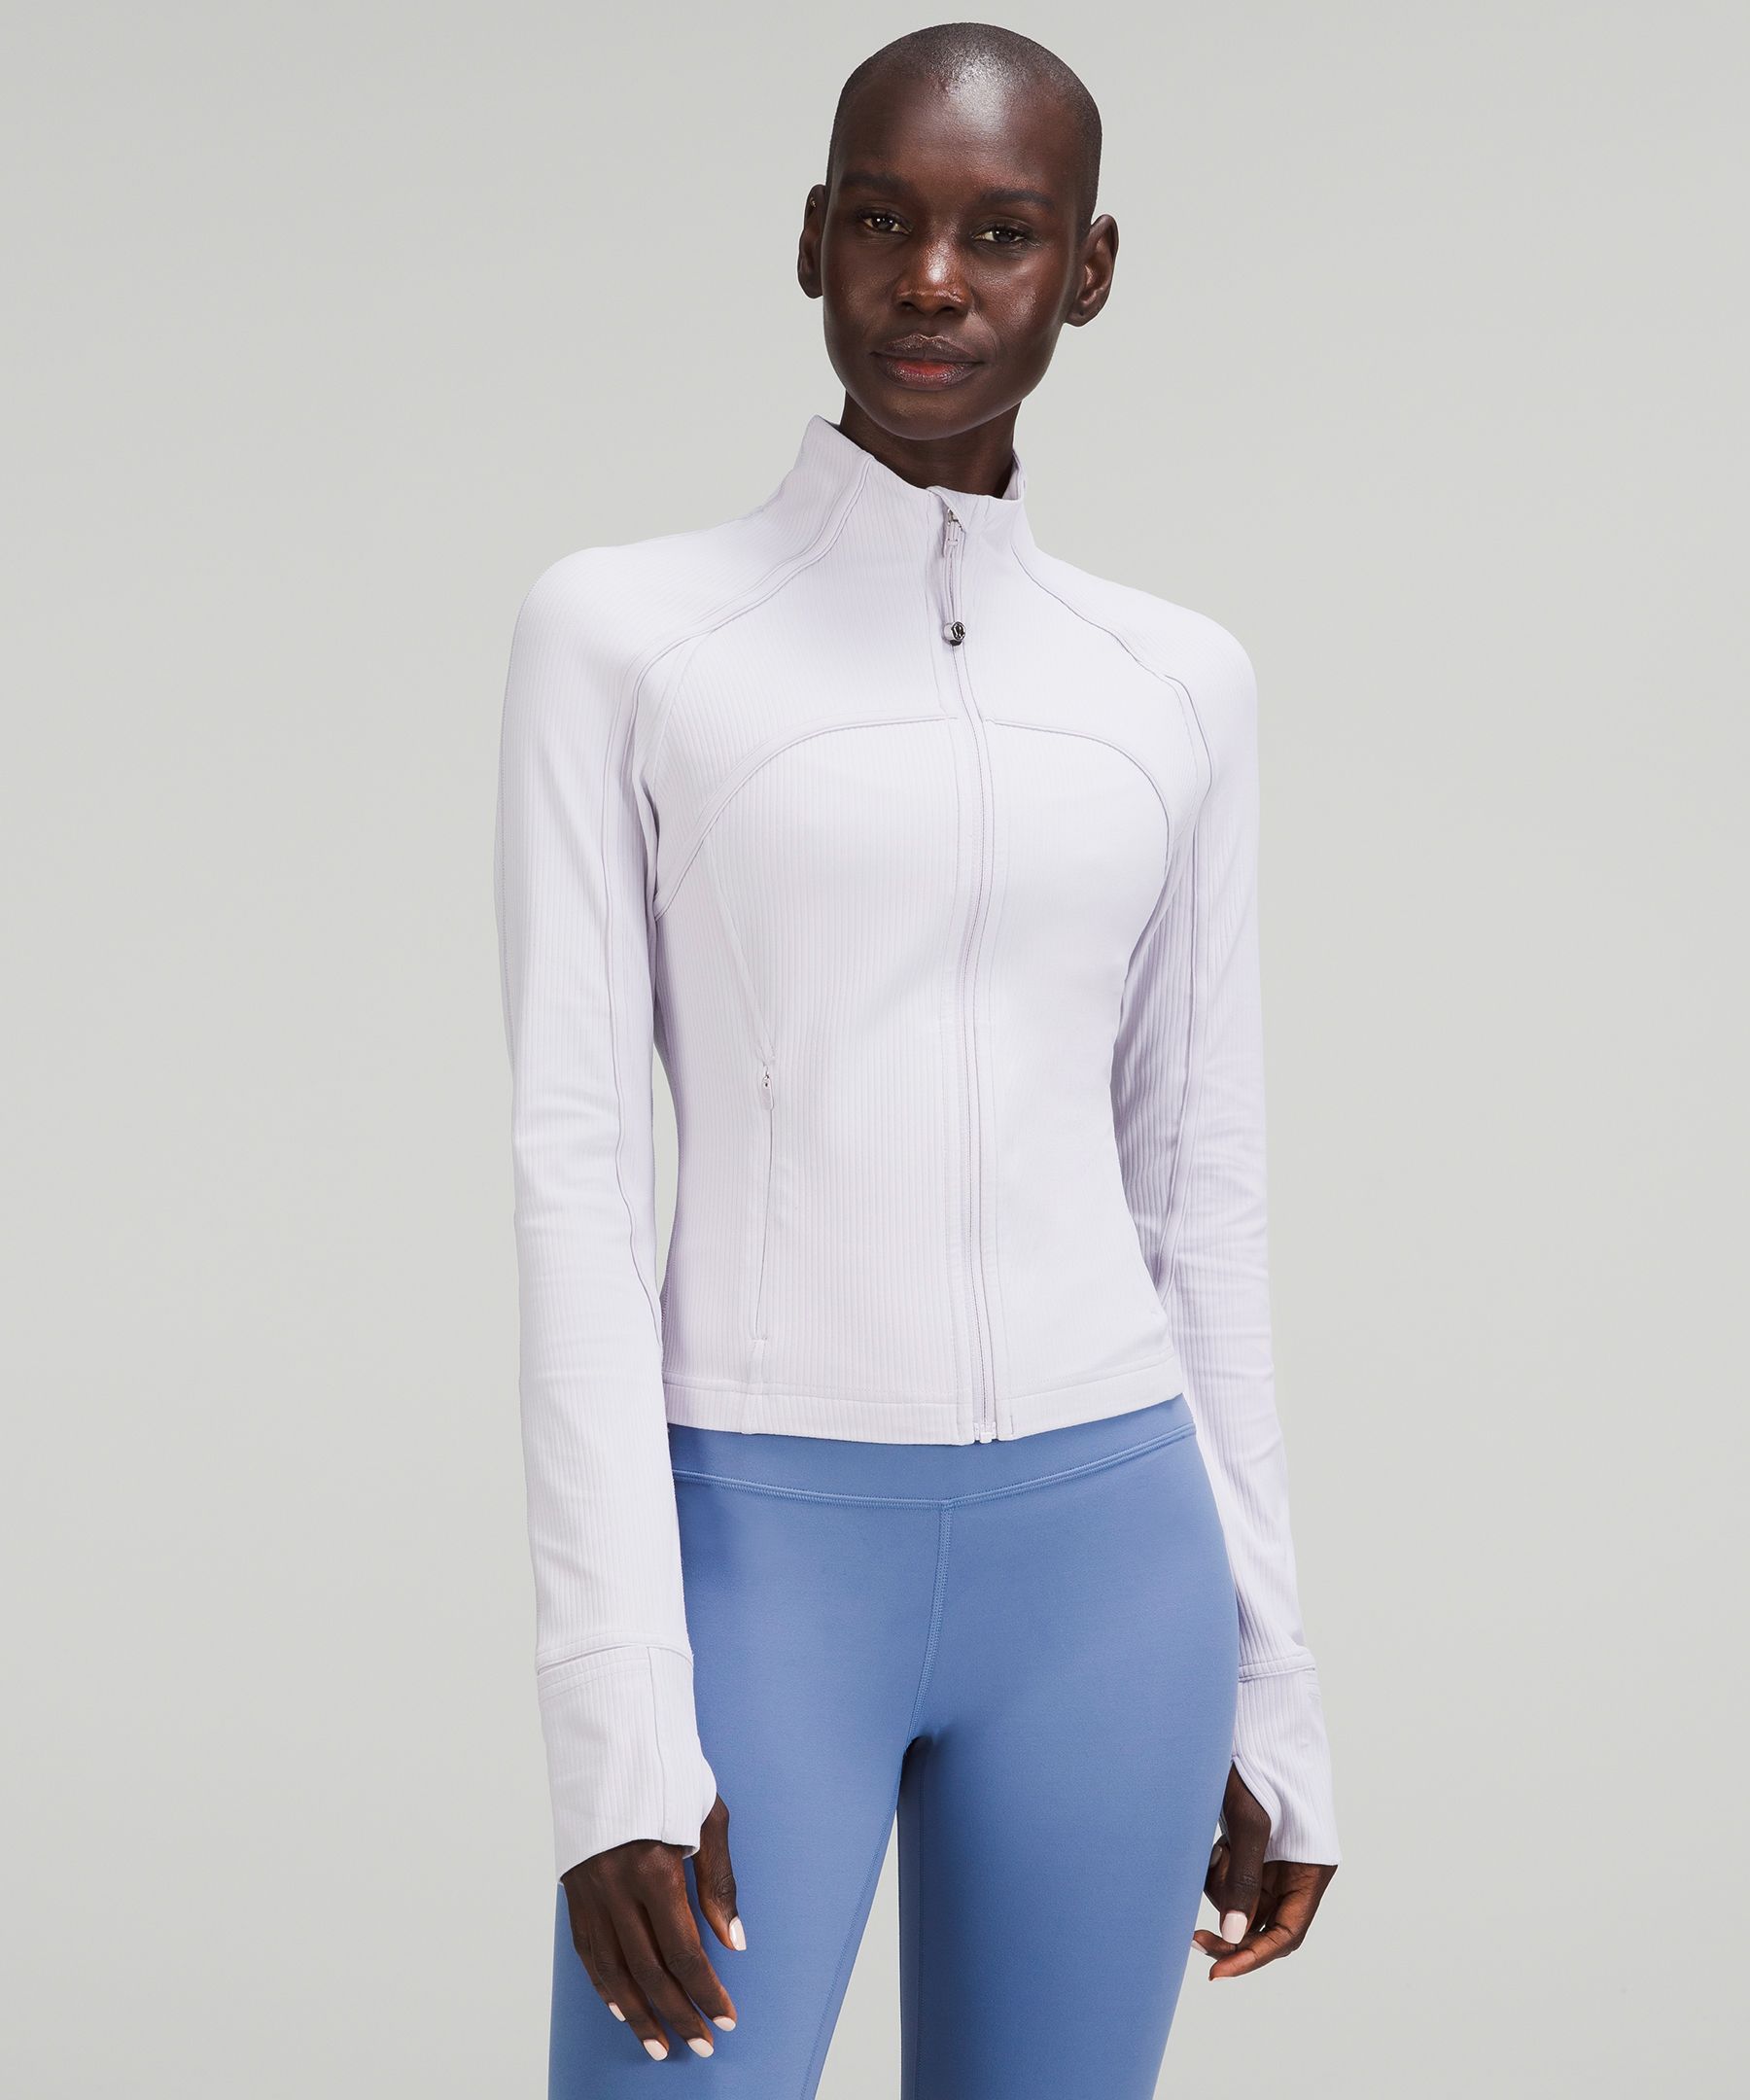 トップス トレーナー/スウェット Ribbed Nulu Cropped Define Jacket | Women's Hoodies & Sweatshirts 